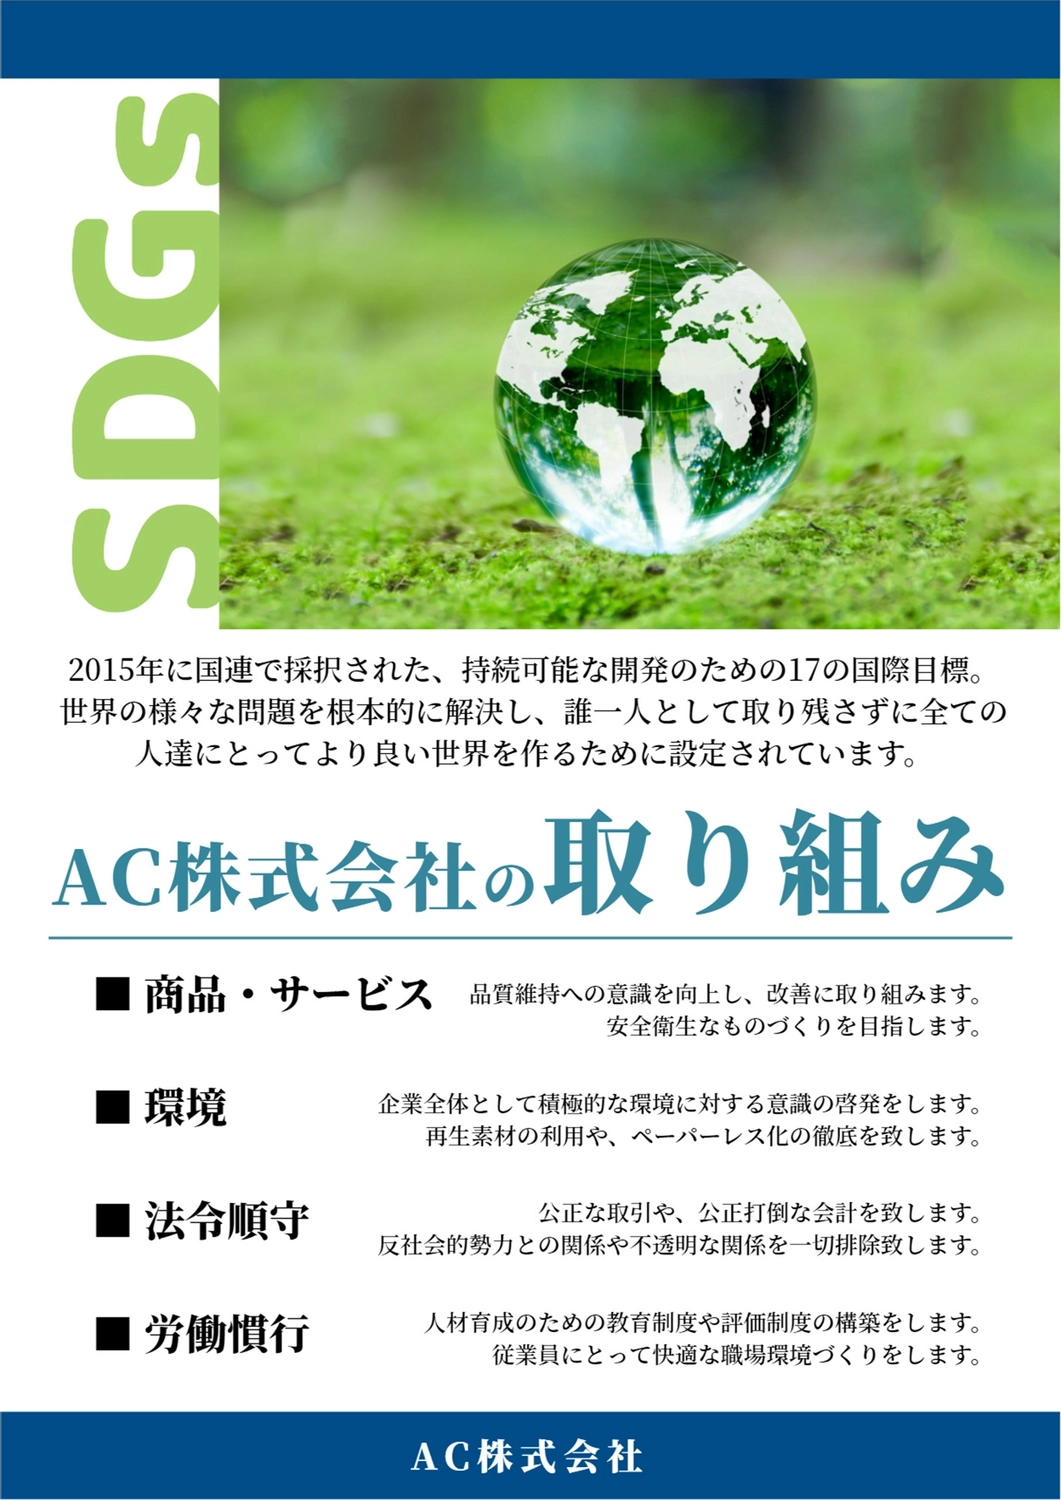 透明な地球のSDGsポスター, glass ball, ecology, environment, Poster template